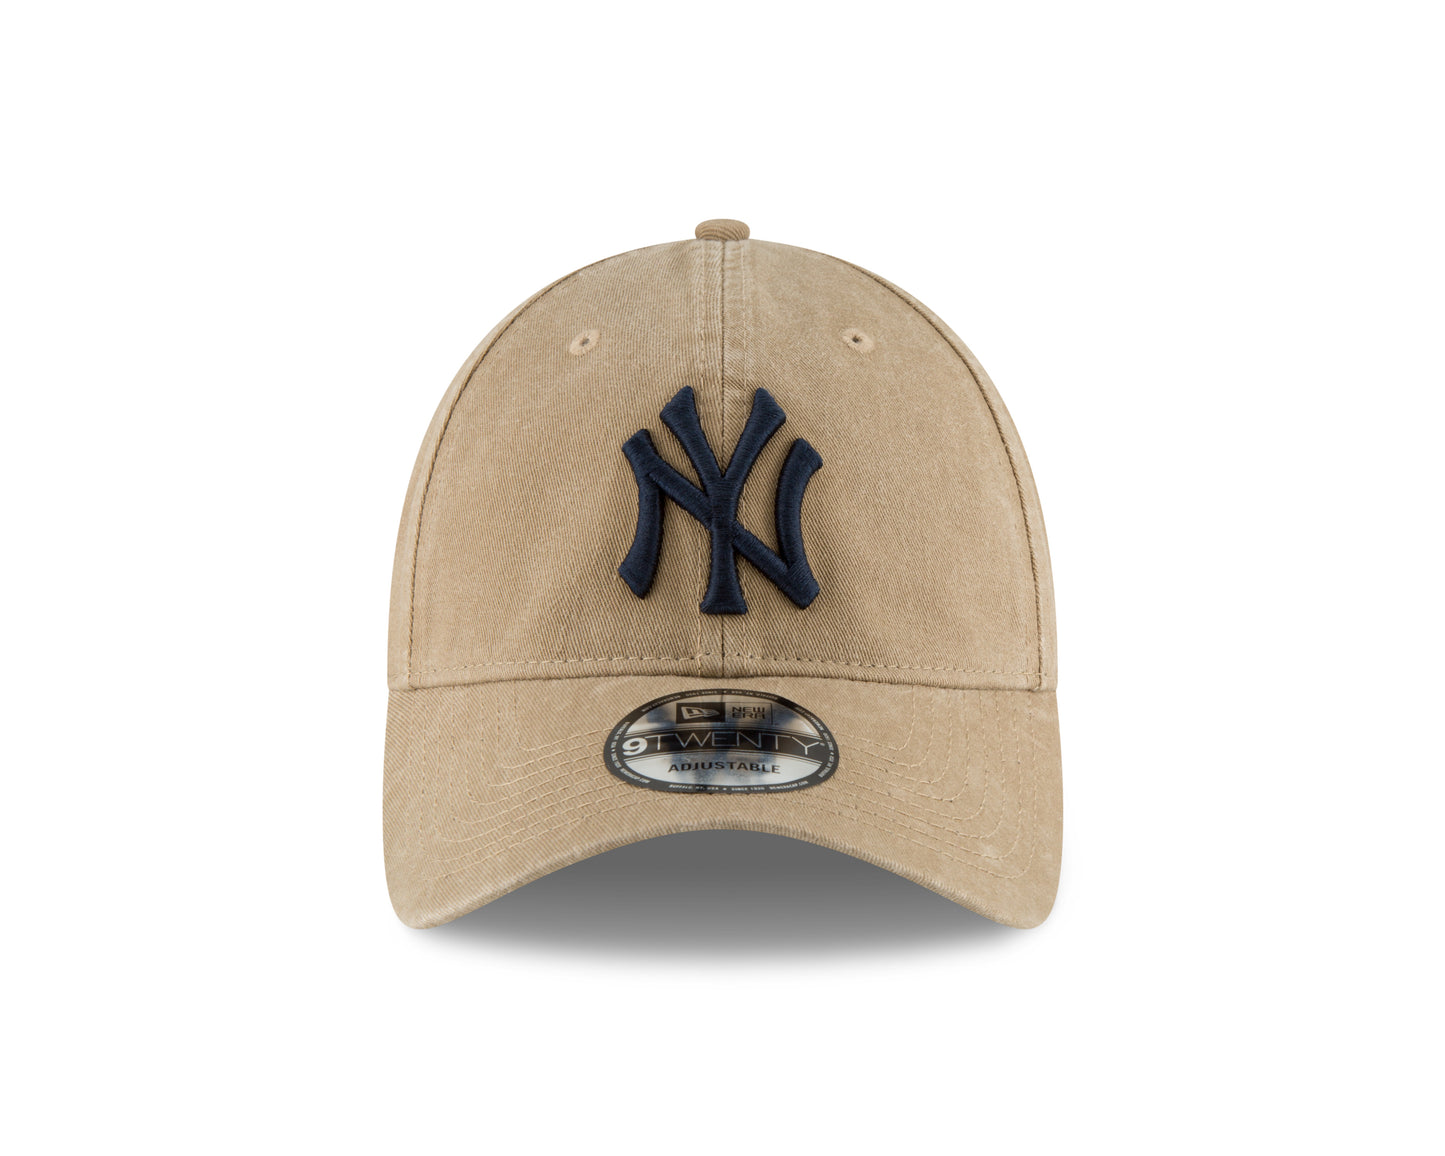 New Era - MLB Core Classic - New York Yankees - 9Twenty  - Khaki - Headz Up 